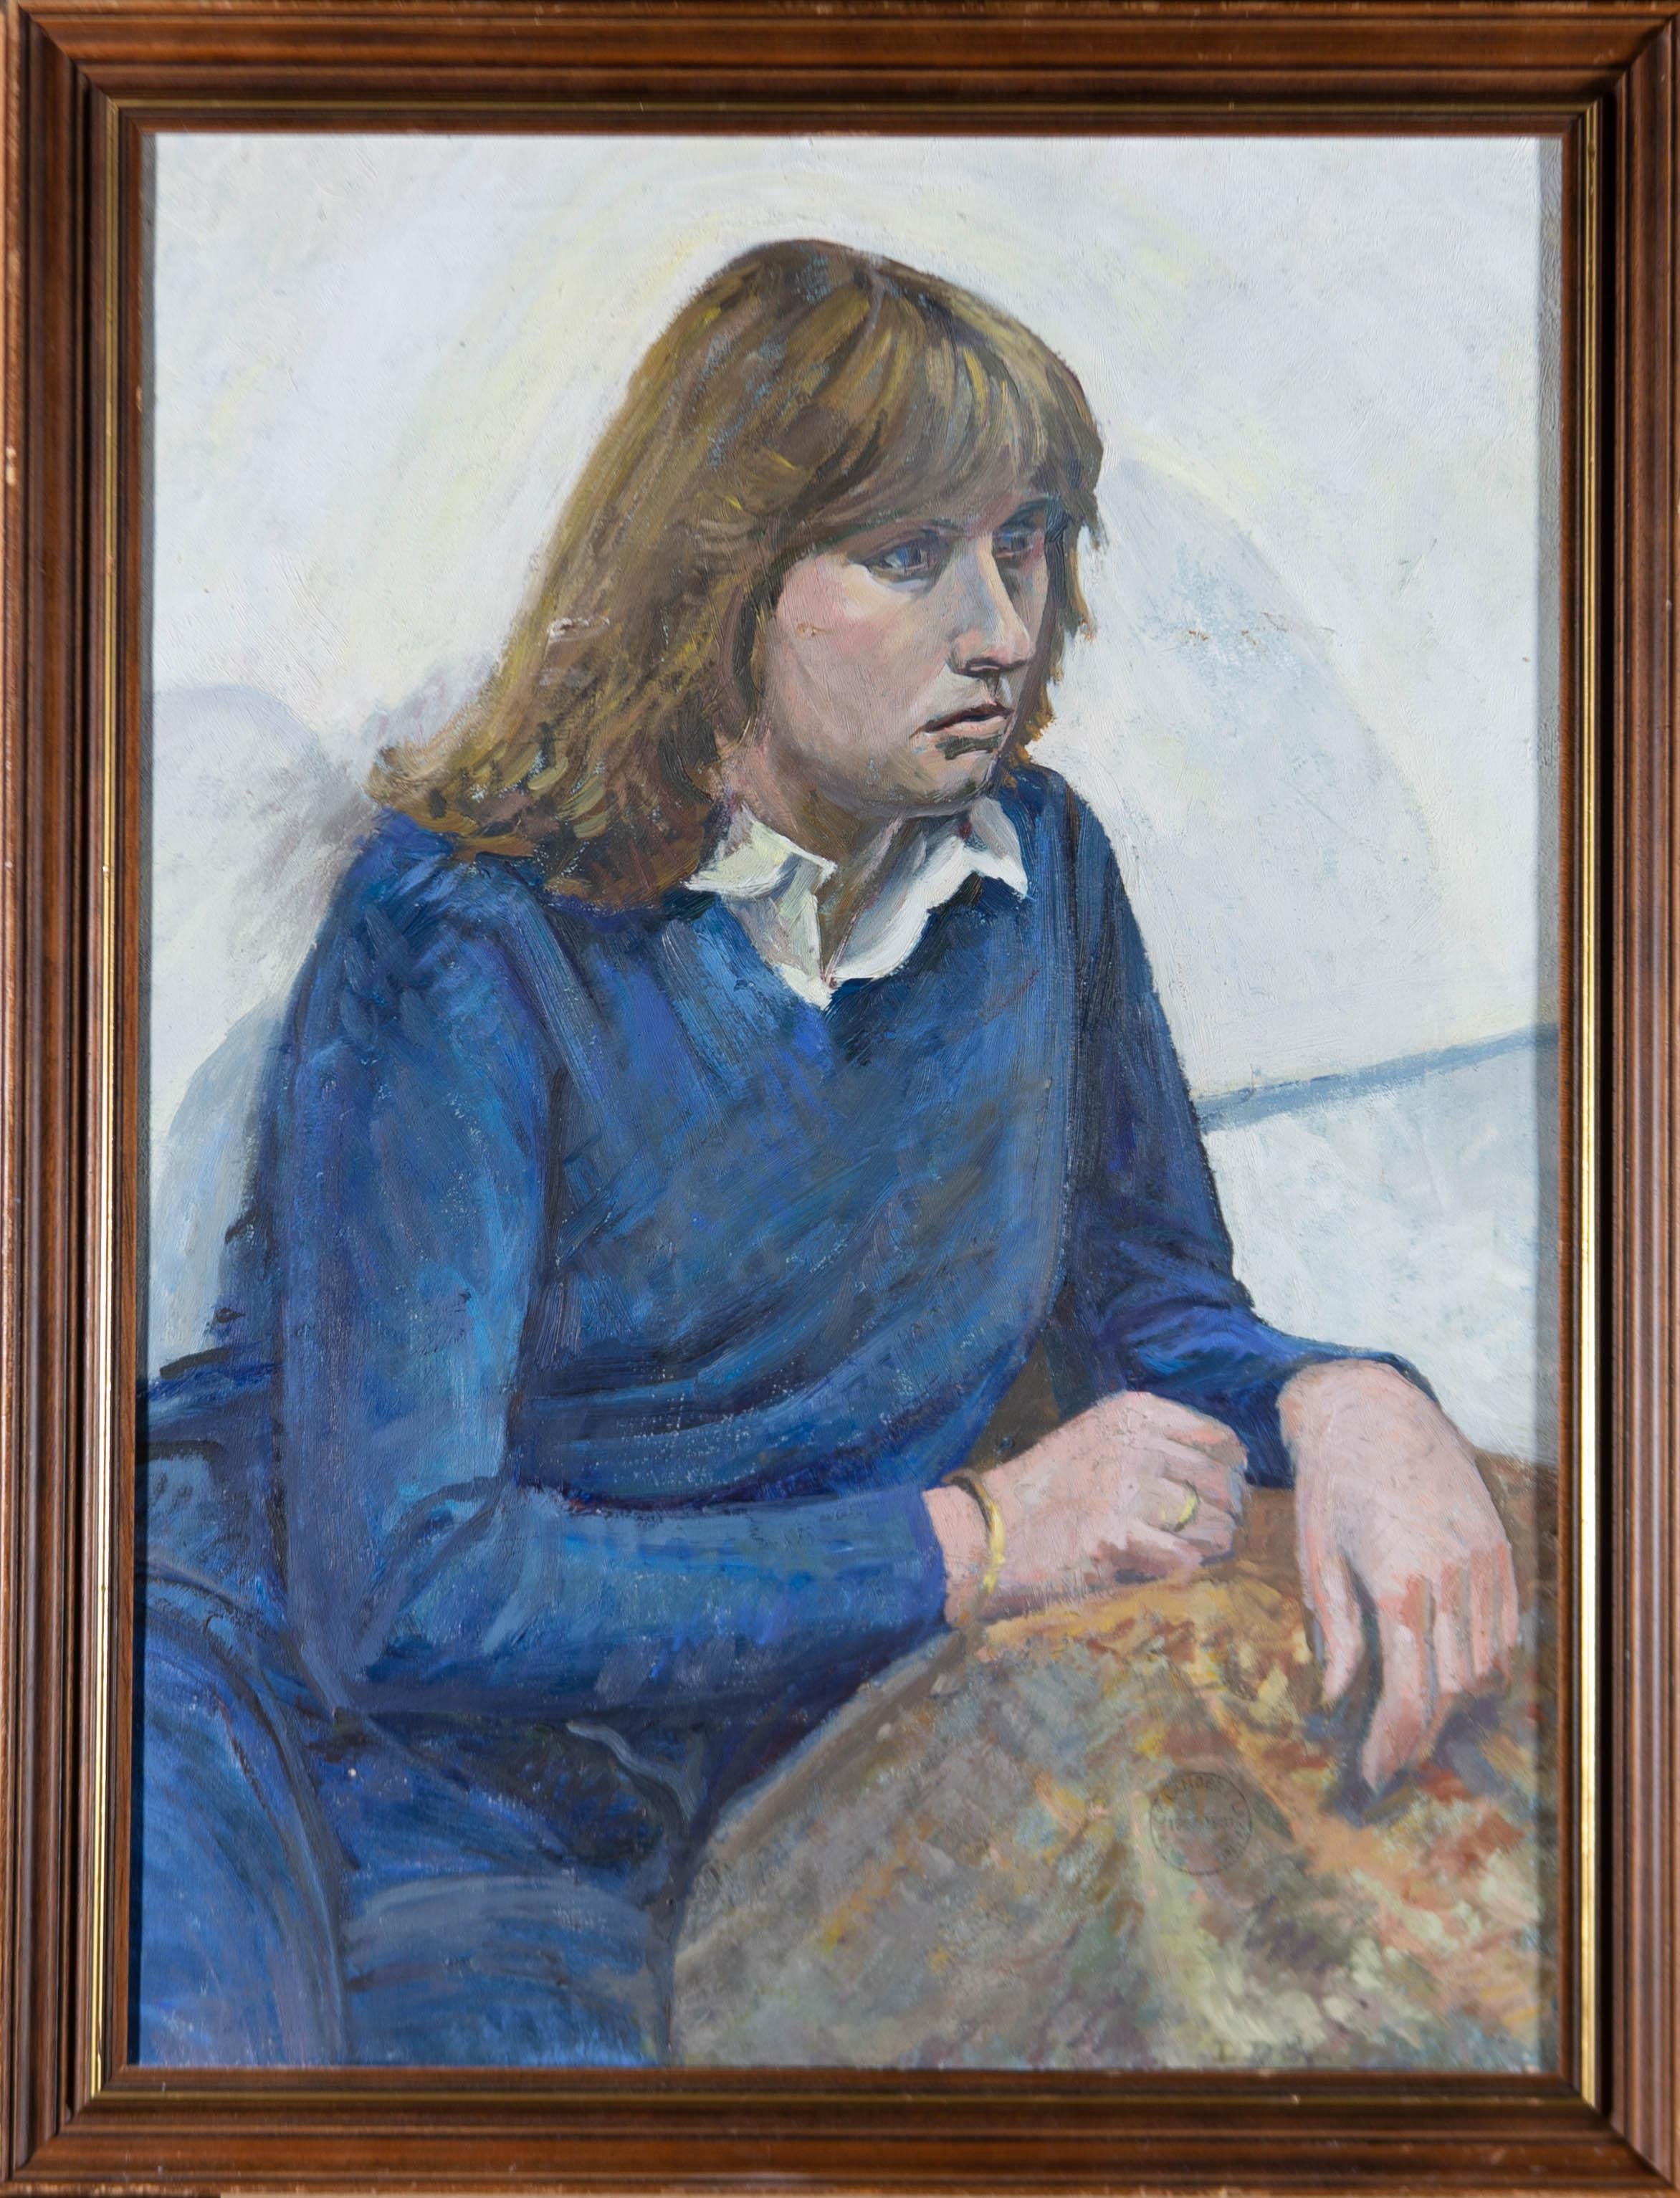 Portrait solennel à l'huile d'une femme portant un pull bleu, reposant ses bras sur un coussin. L'artiste a utilisé des coups de pinceau grossiers et une palette sourde pour créer une atmosphère sérieuse.

Le tableau n'est pas signé mais porte le